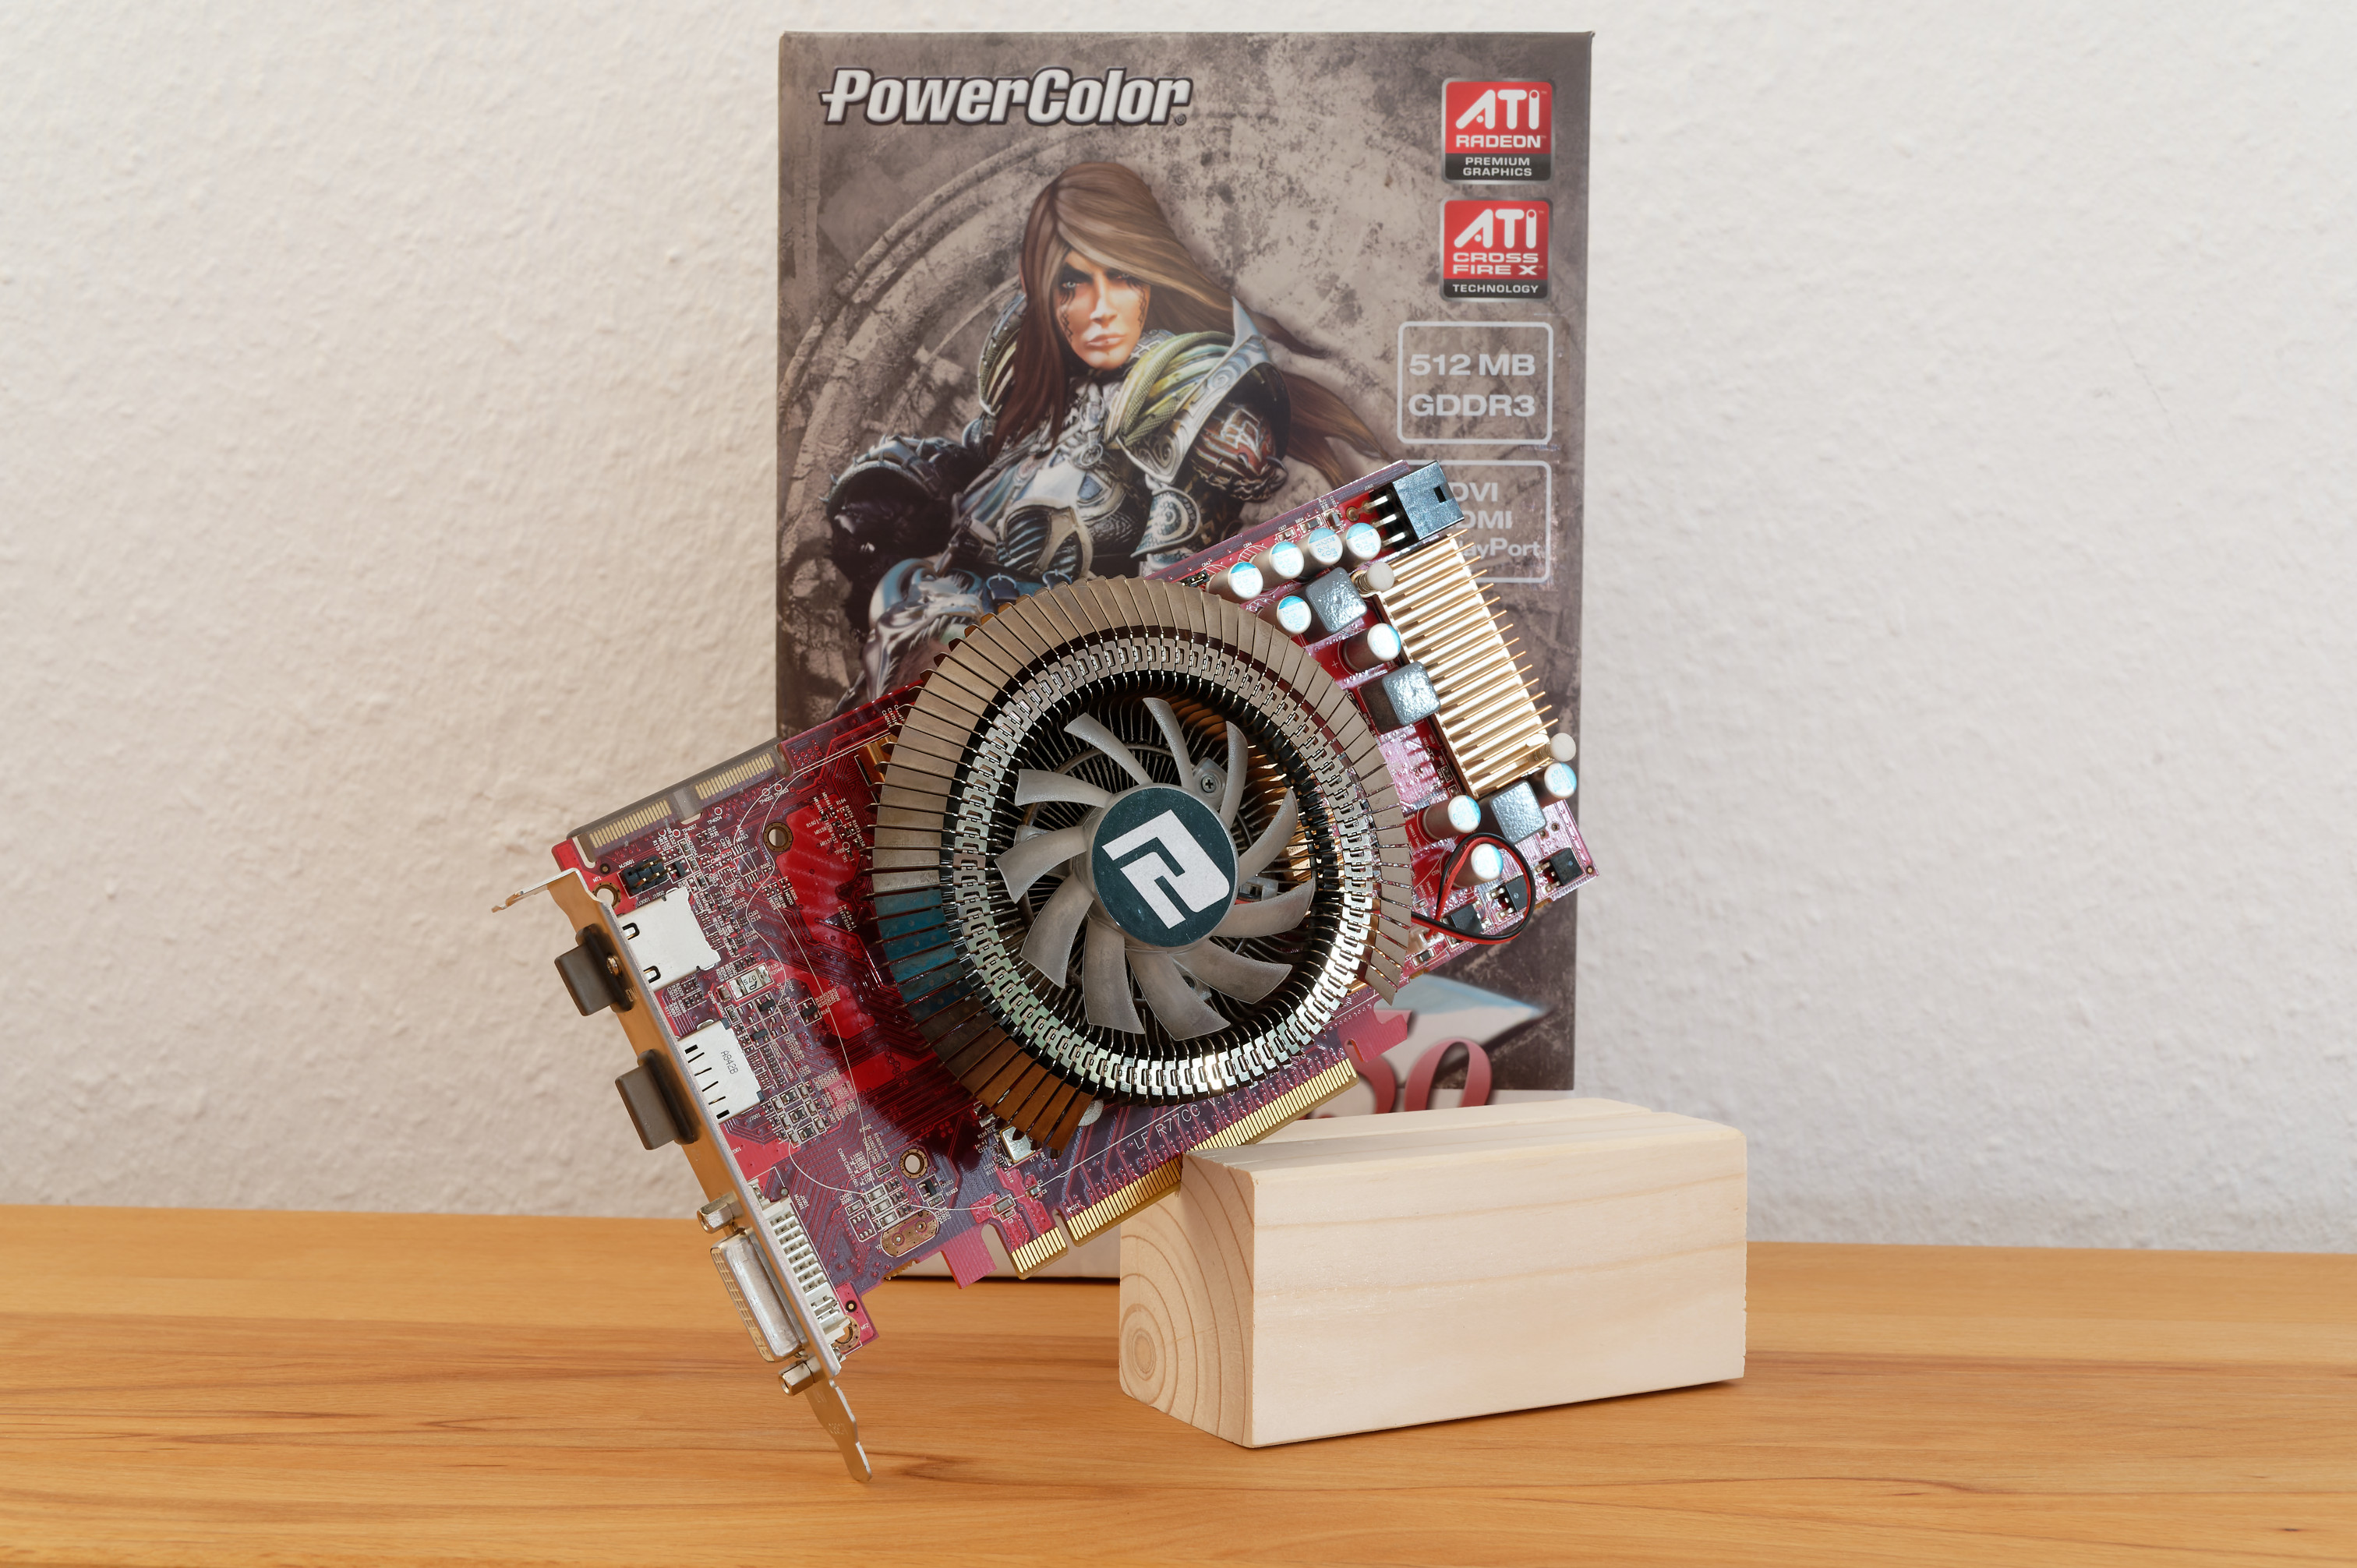 PowerColor-AMD-HD4850-Vorderseite.jpg